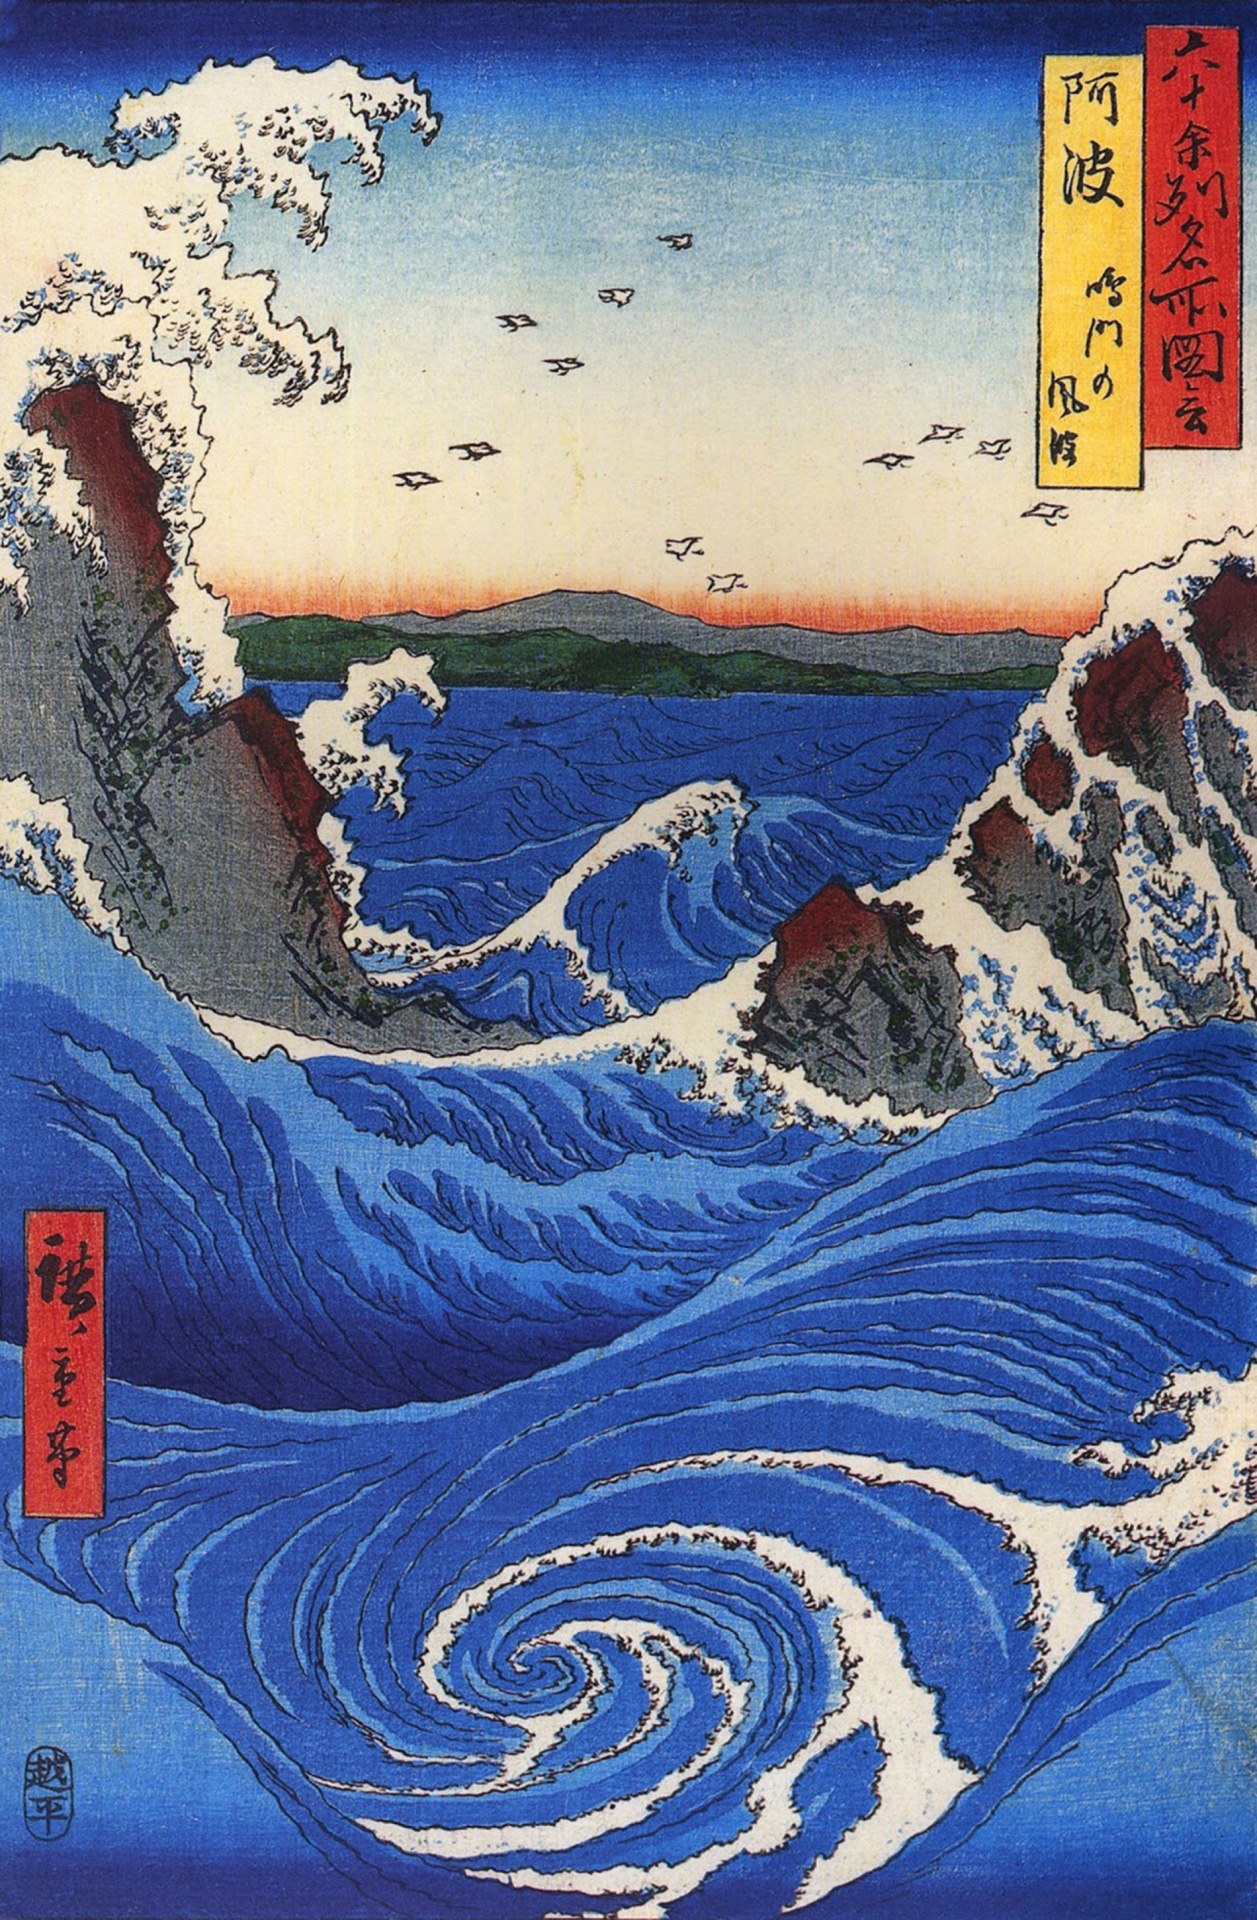 Vintage Japanese Wave Poster